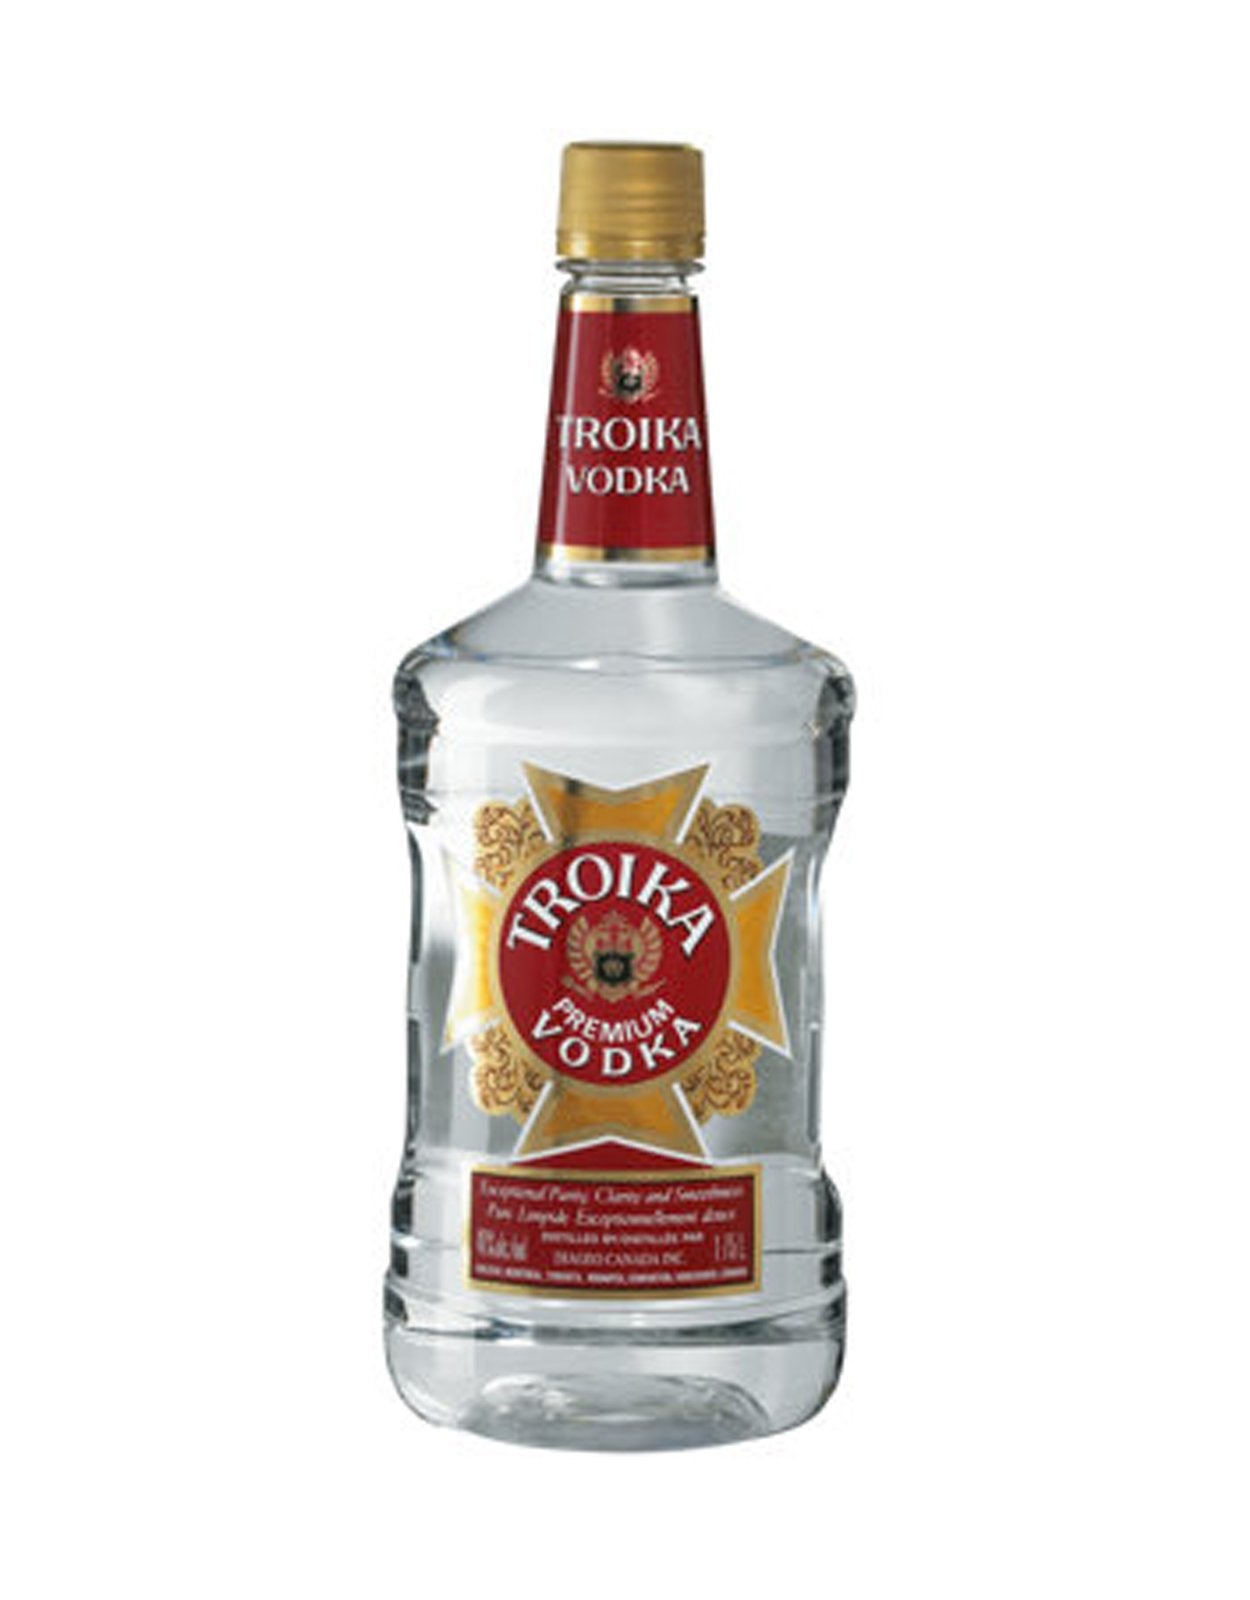 Troika Vodka - 1.14 Litre Bottle